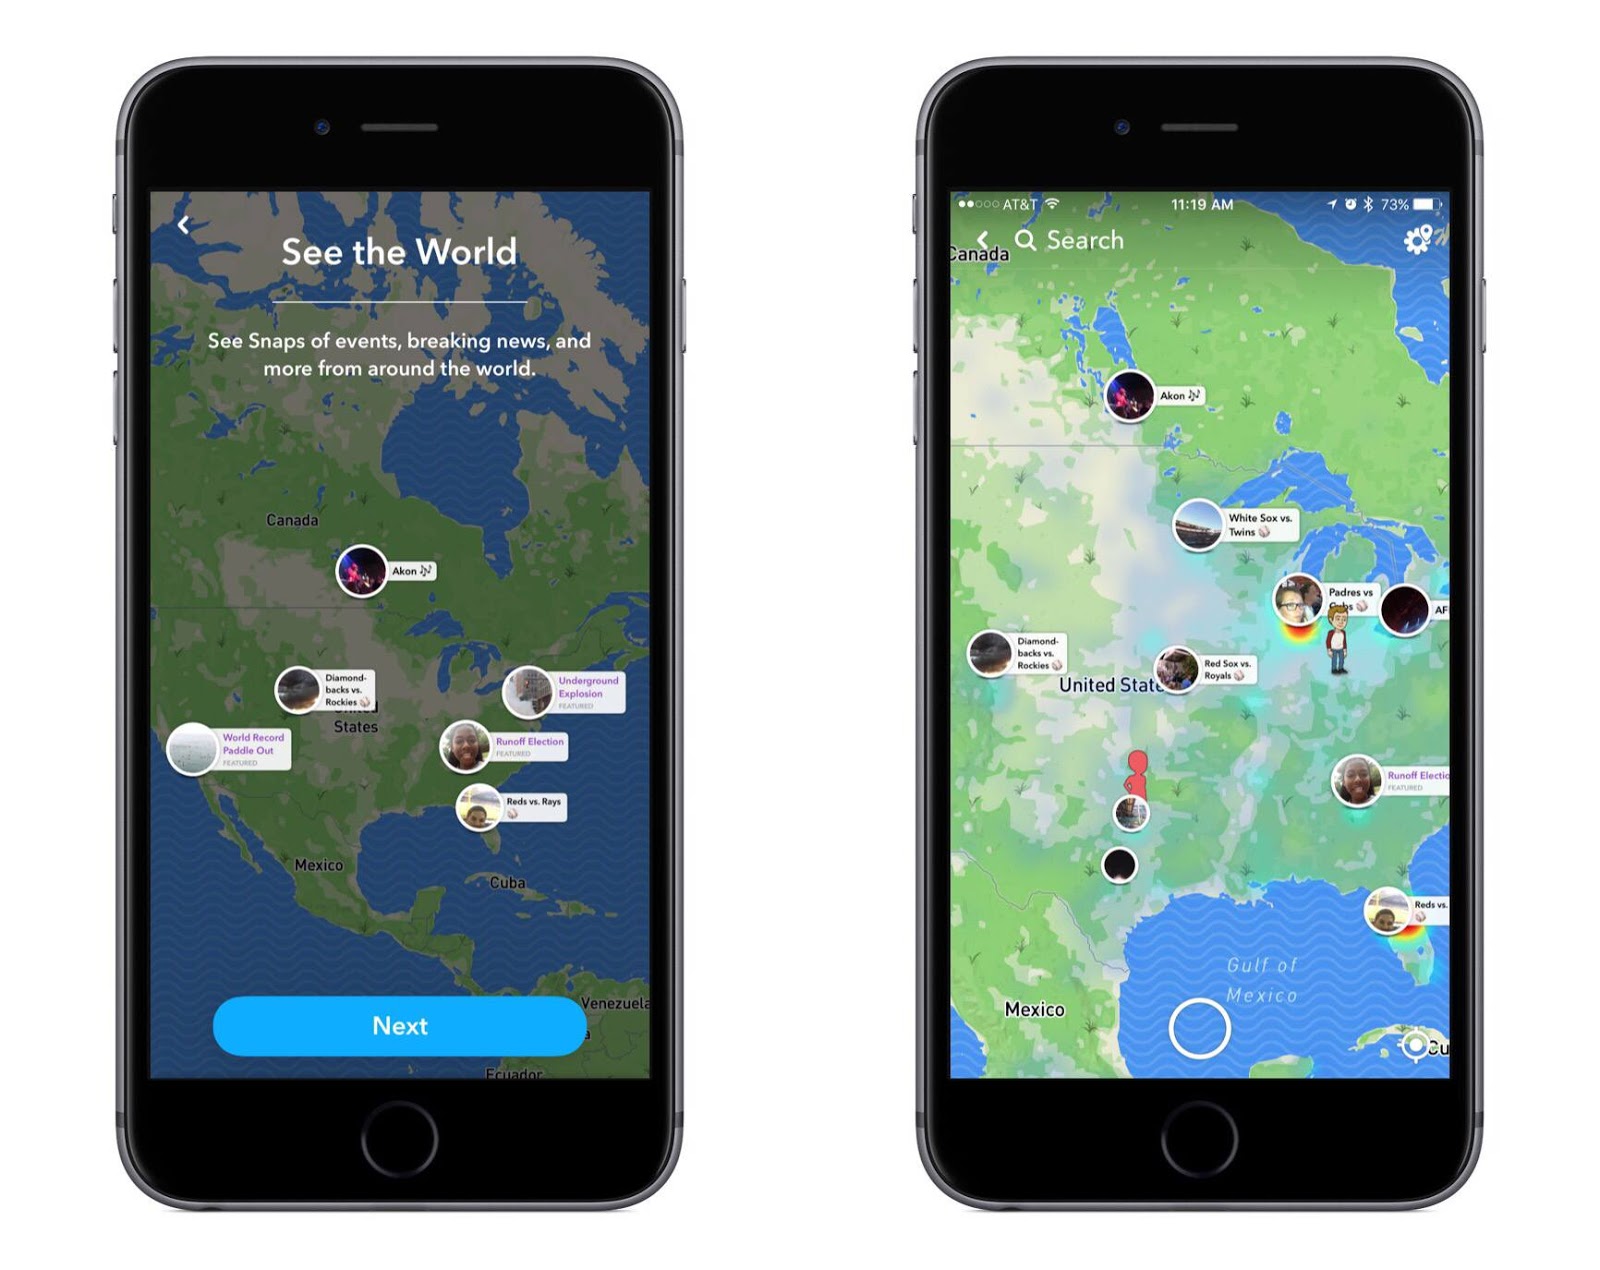 Snap forums. Snap карта. Снэпчат карта. Snapchat интерактивная карта. Snap Map приложение.